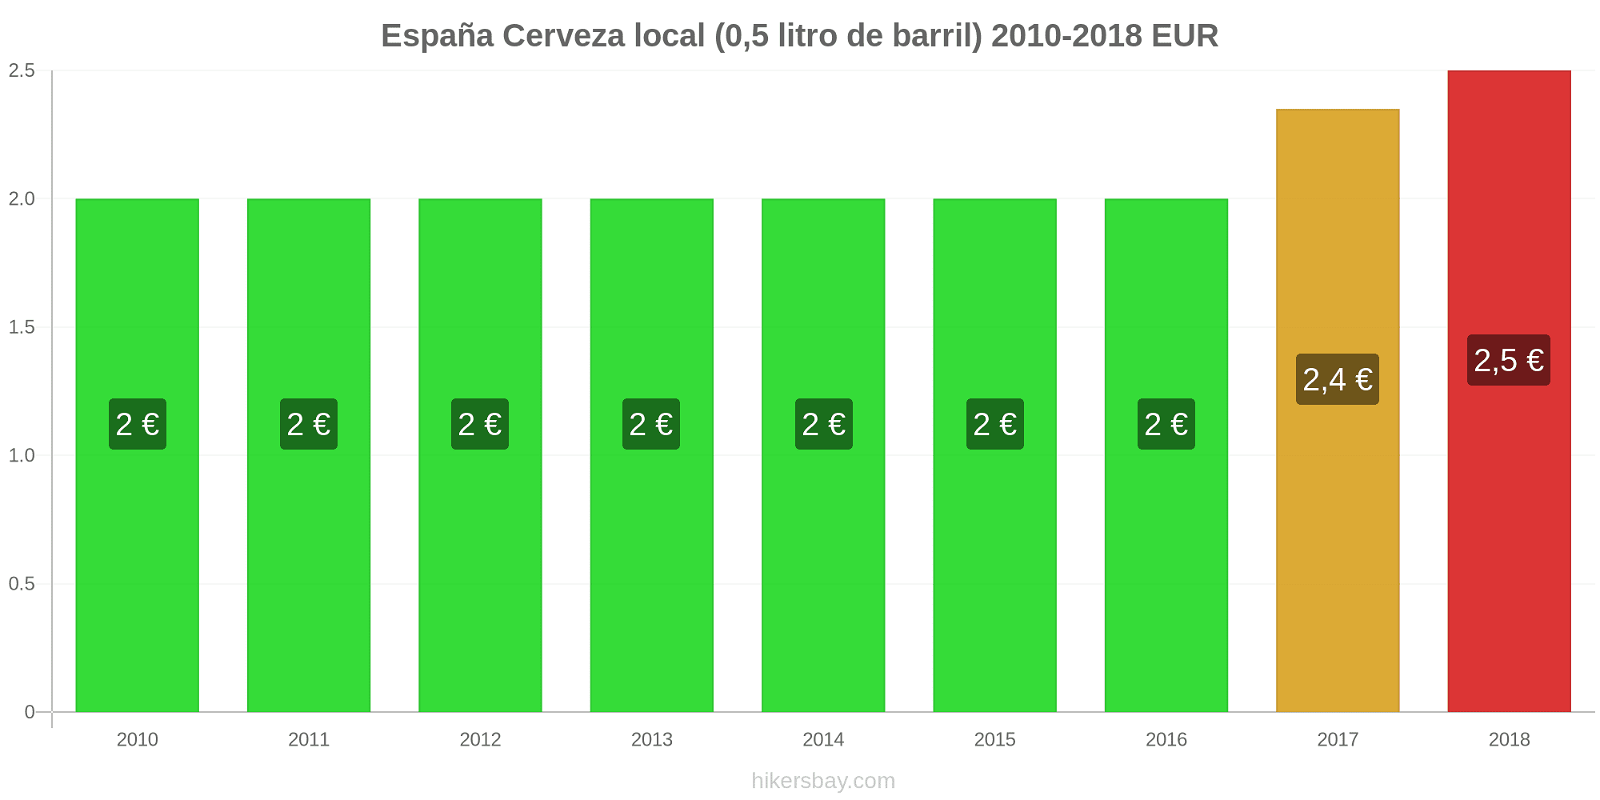 España cambios de precios Cerveza de barril (0,5 litros) hikersbay.com